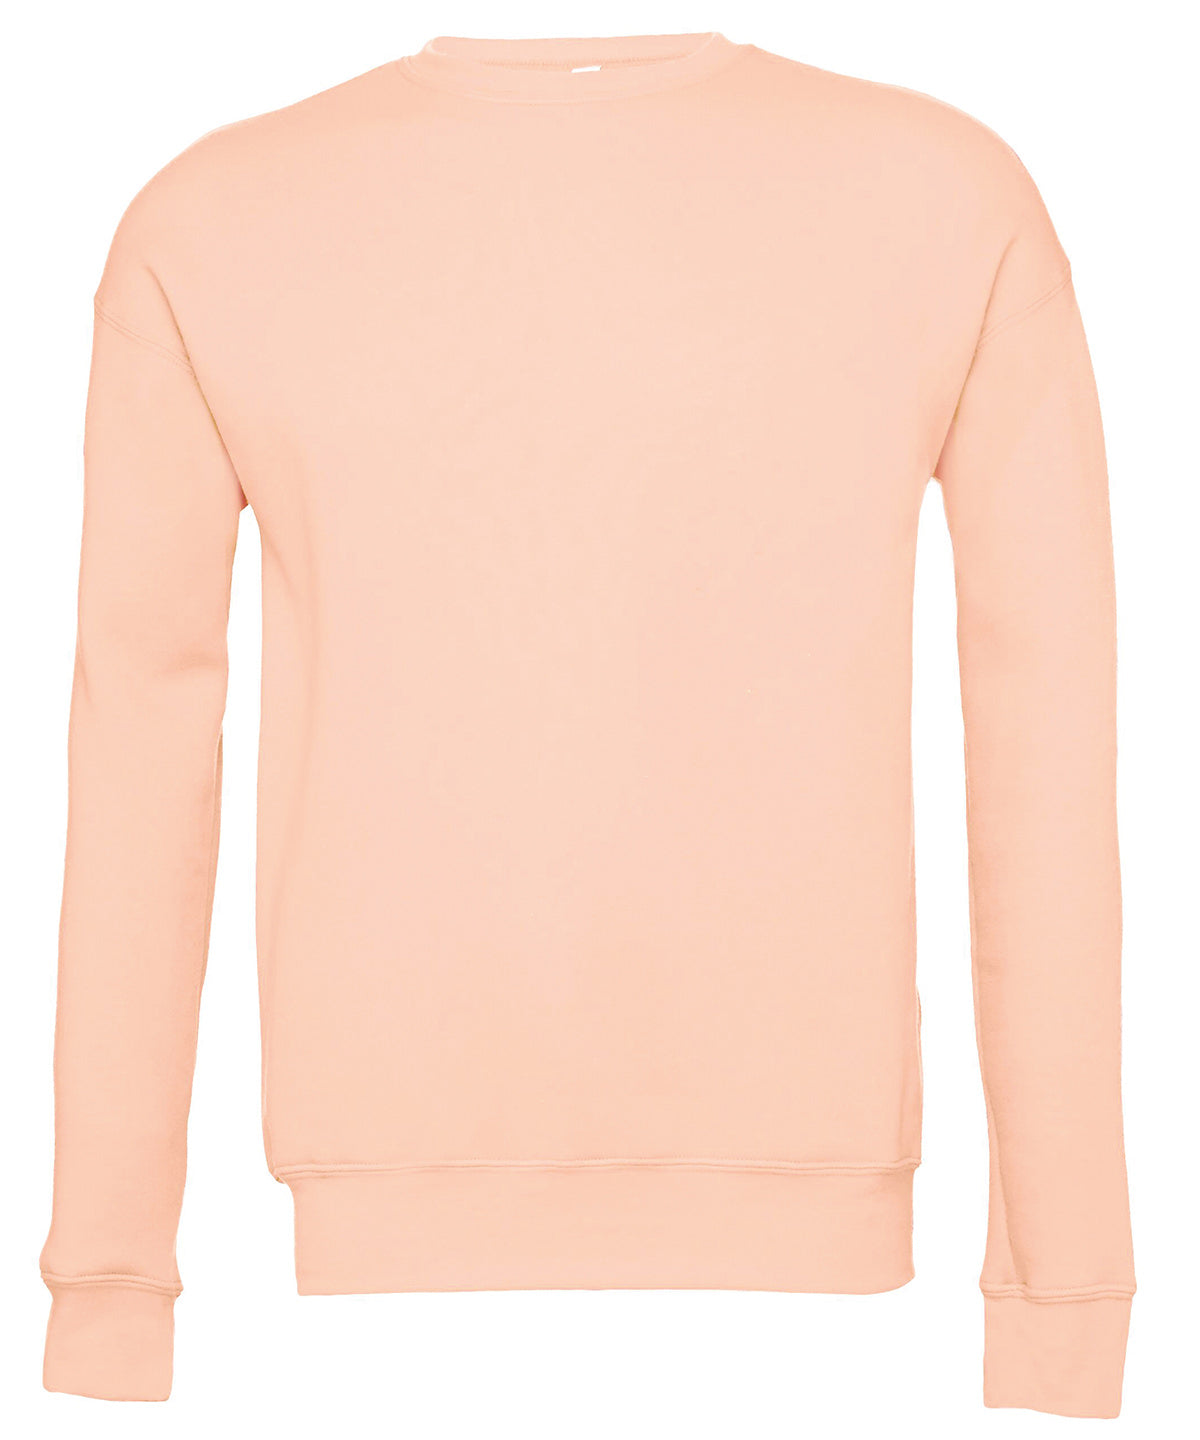 Personalised Sweatshirts - Navy Bella Canvas Unisex drop shoulder fleece